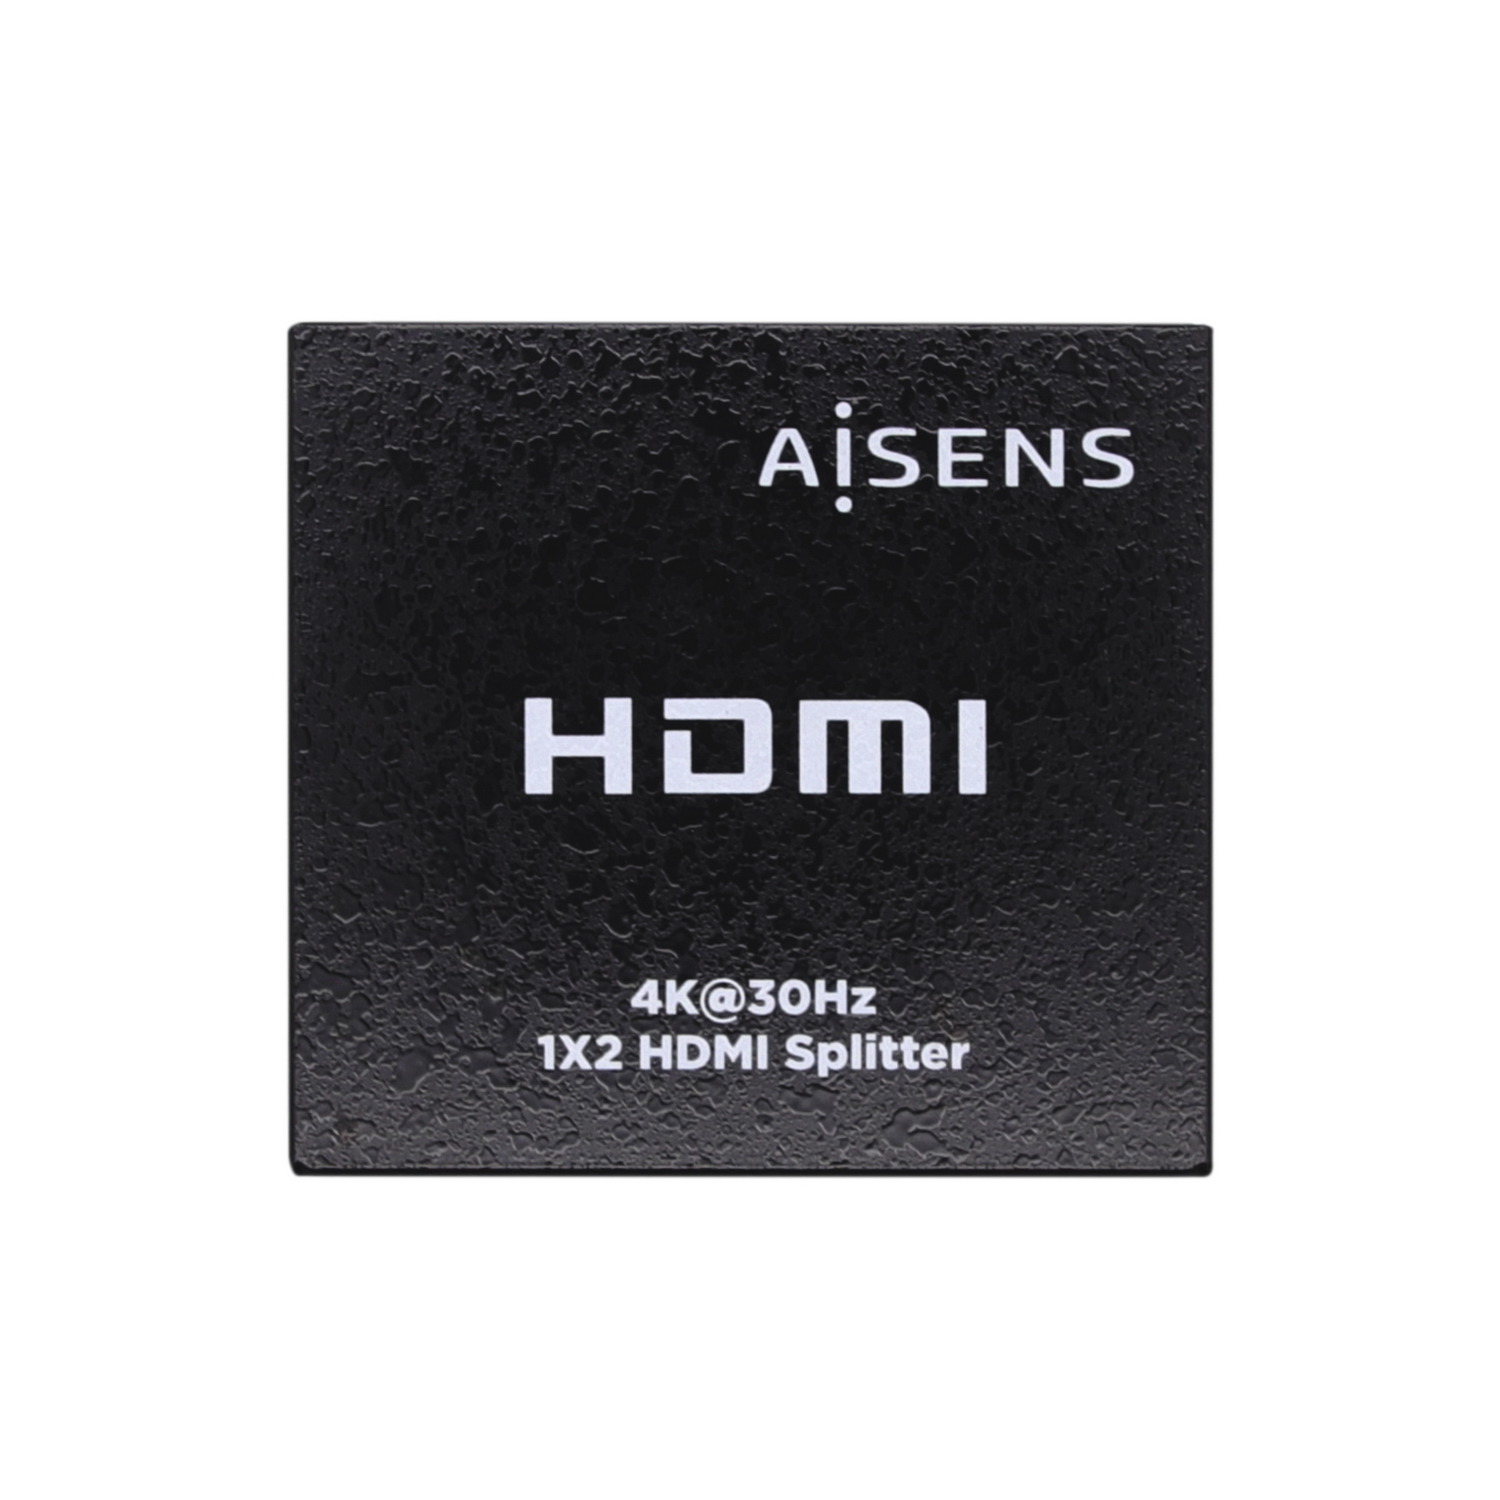 Duplicateur HDMI Aisens 4K @ 30HZ 1x2 avec alimentation - Couleur noire